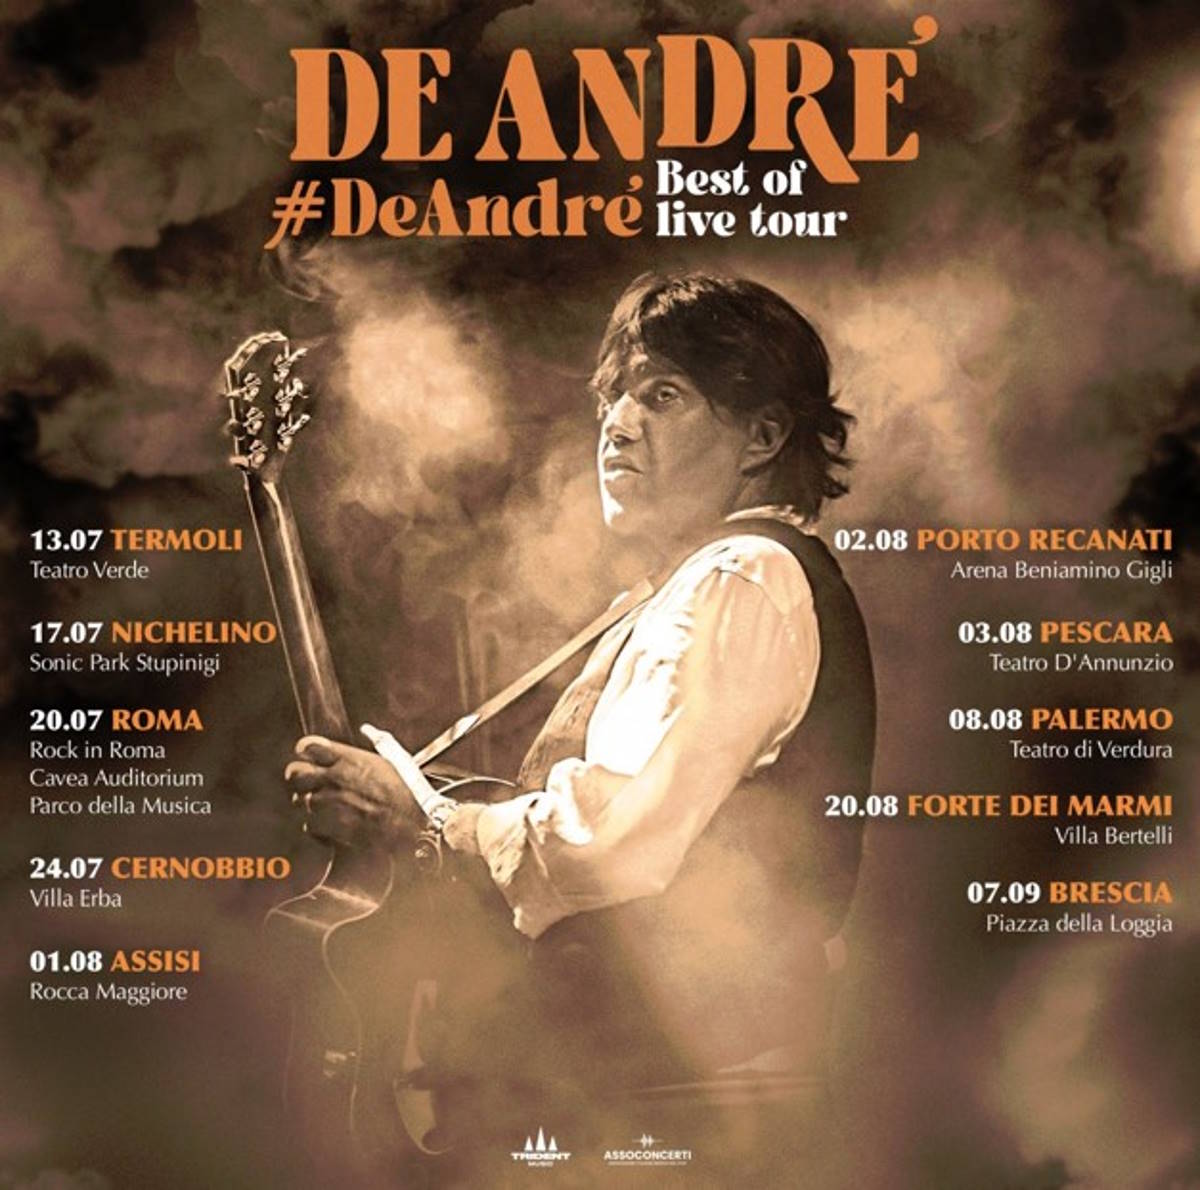 Cristiano De André: questa estate, in concerto in tutta Italia, con il nuovo tour dedicato al padre “De André #DeAndré – Best Of Live Tour”